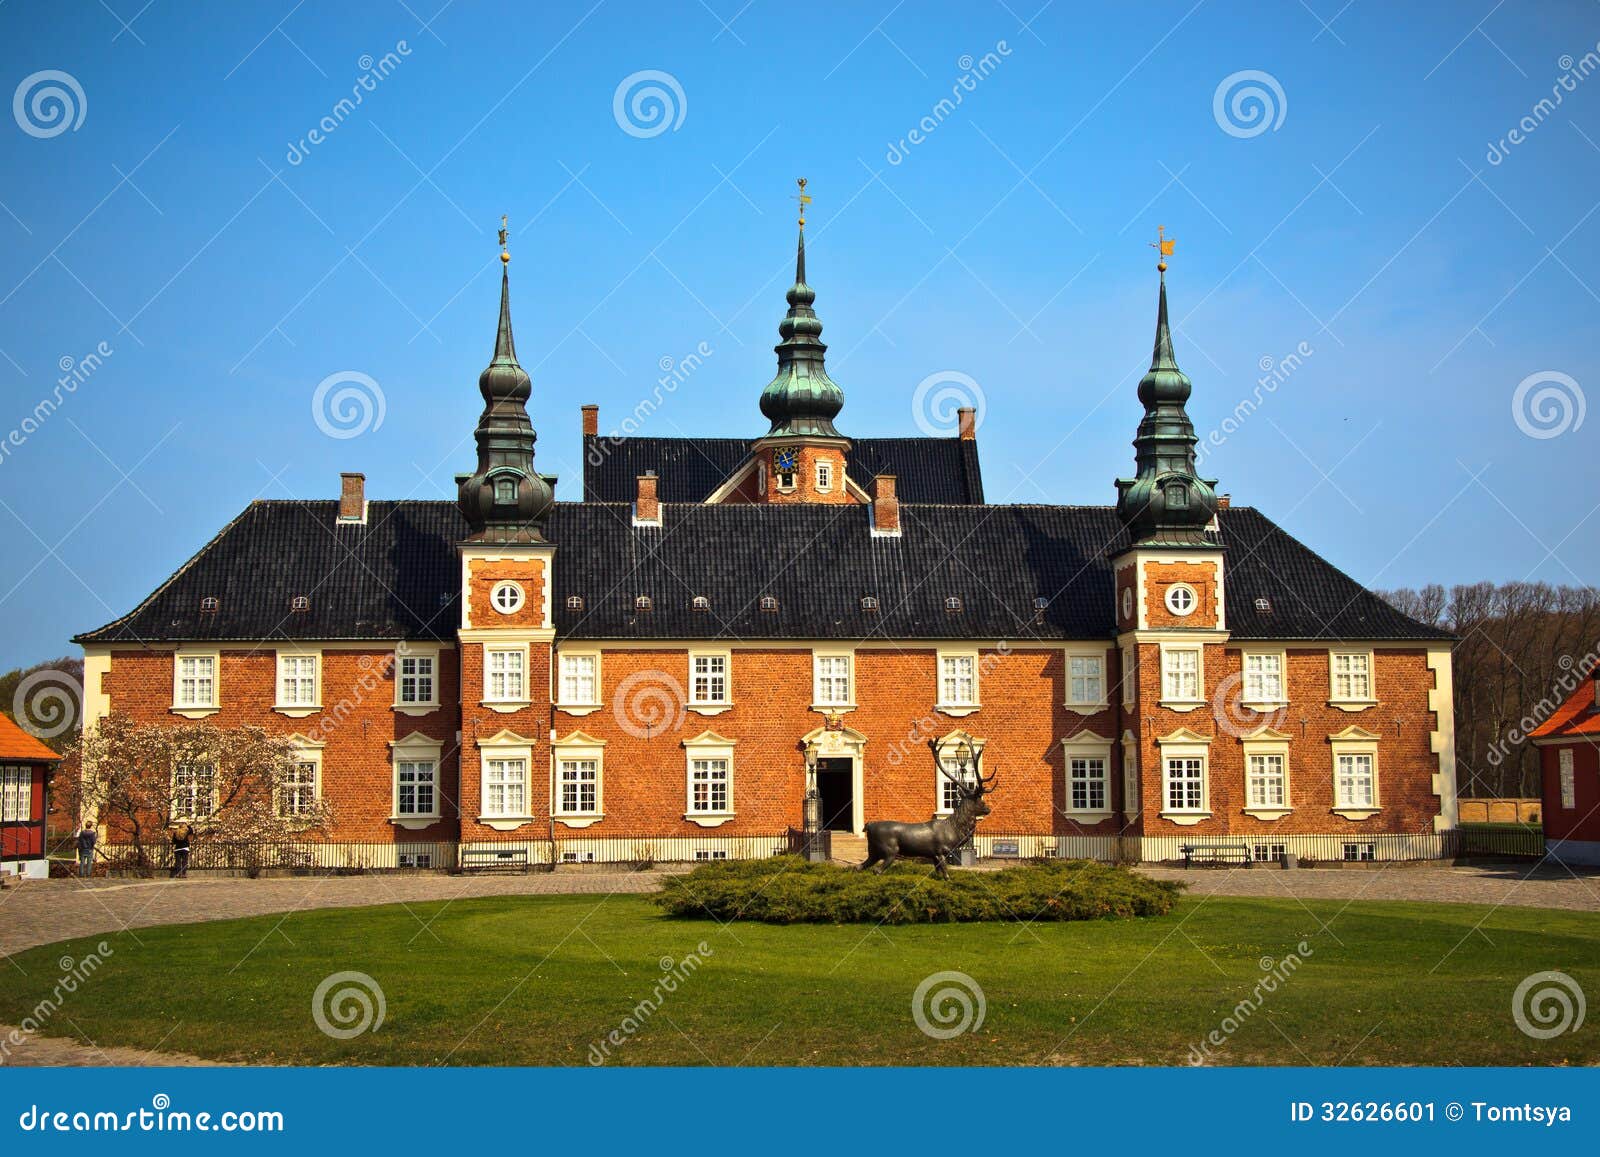 丹麦 阿美琳堡王宫 及教堂-中关村在线摄影论坛